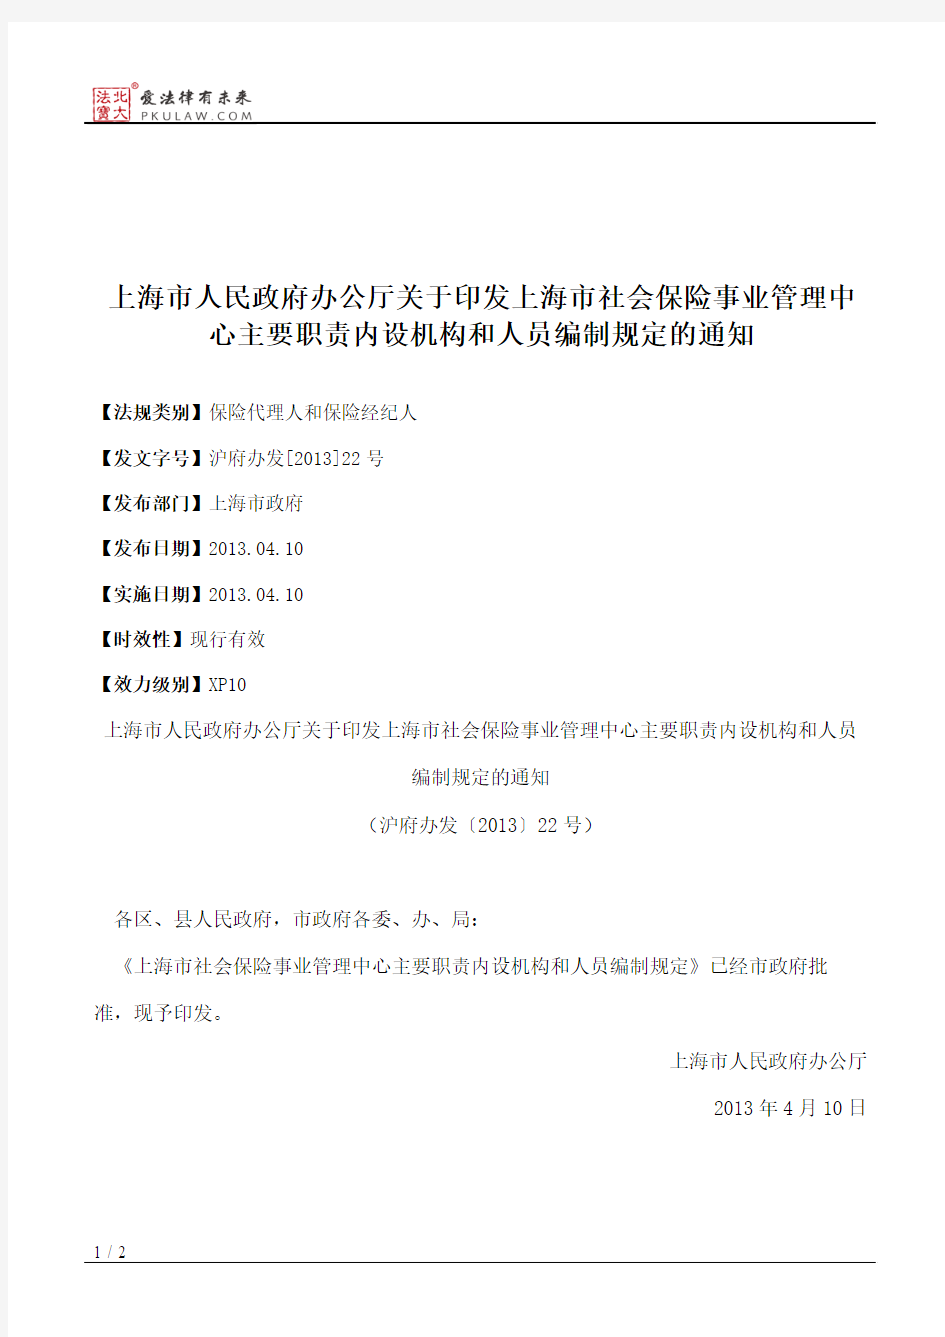 上海市人民政府办公厅关于印发上海市社会保险事业管理中心主要职